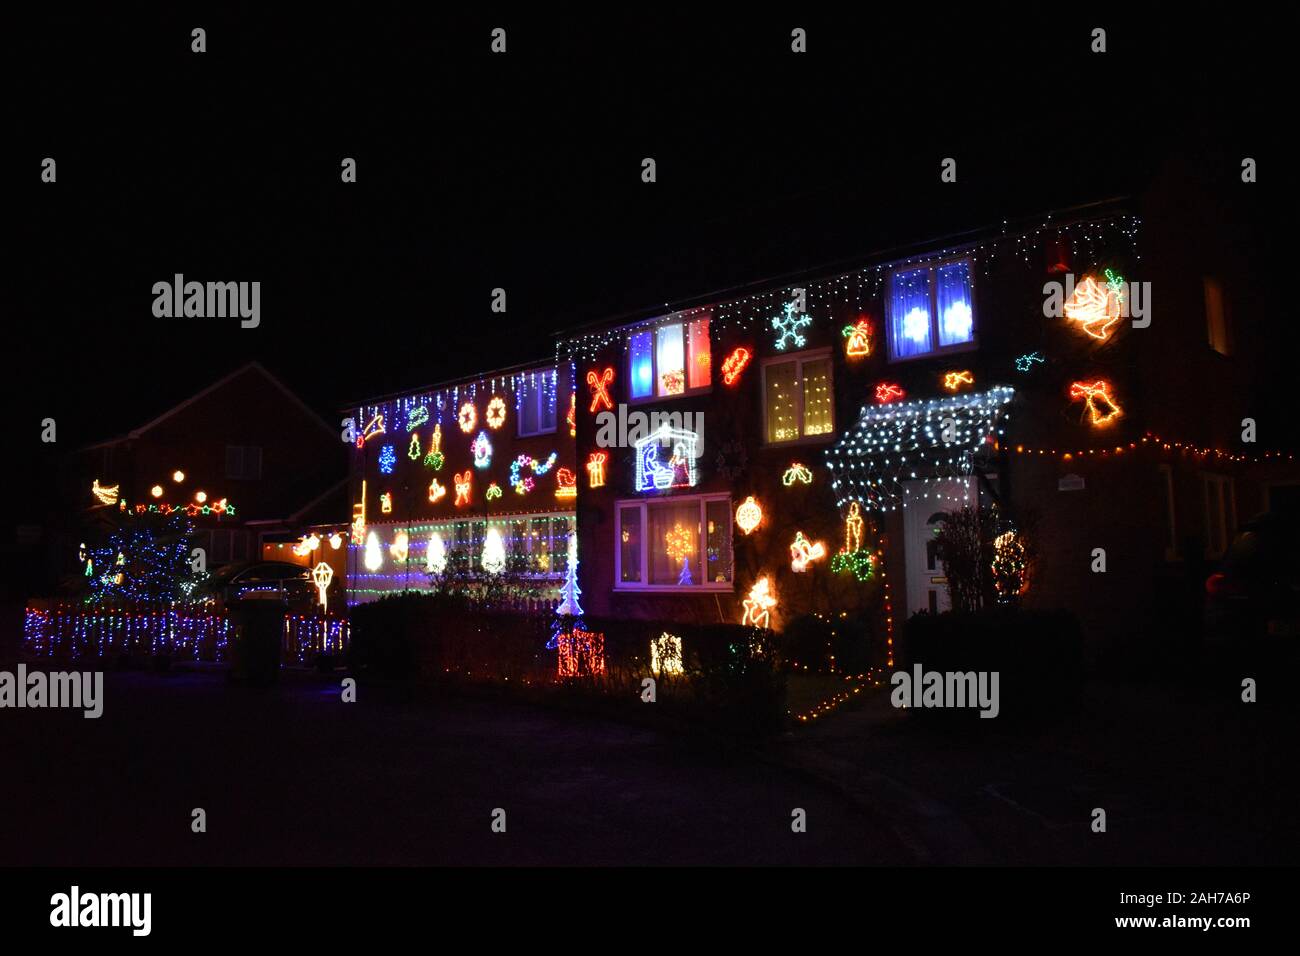 Weihnachten Straße in Milton Keynes - ein Cul-de-sac von Häusern, die alle für Weihnachten dekoriert Geld für Willen Hospiz zu erhöhen. Stockfoto